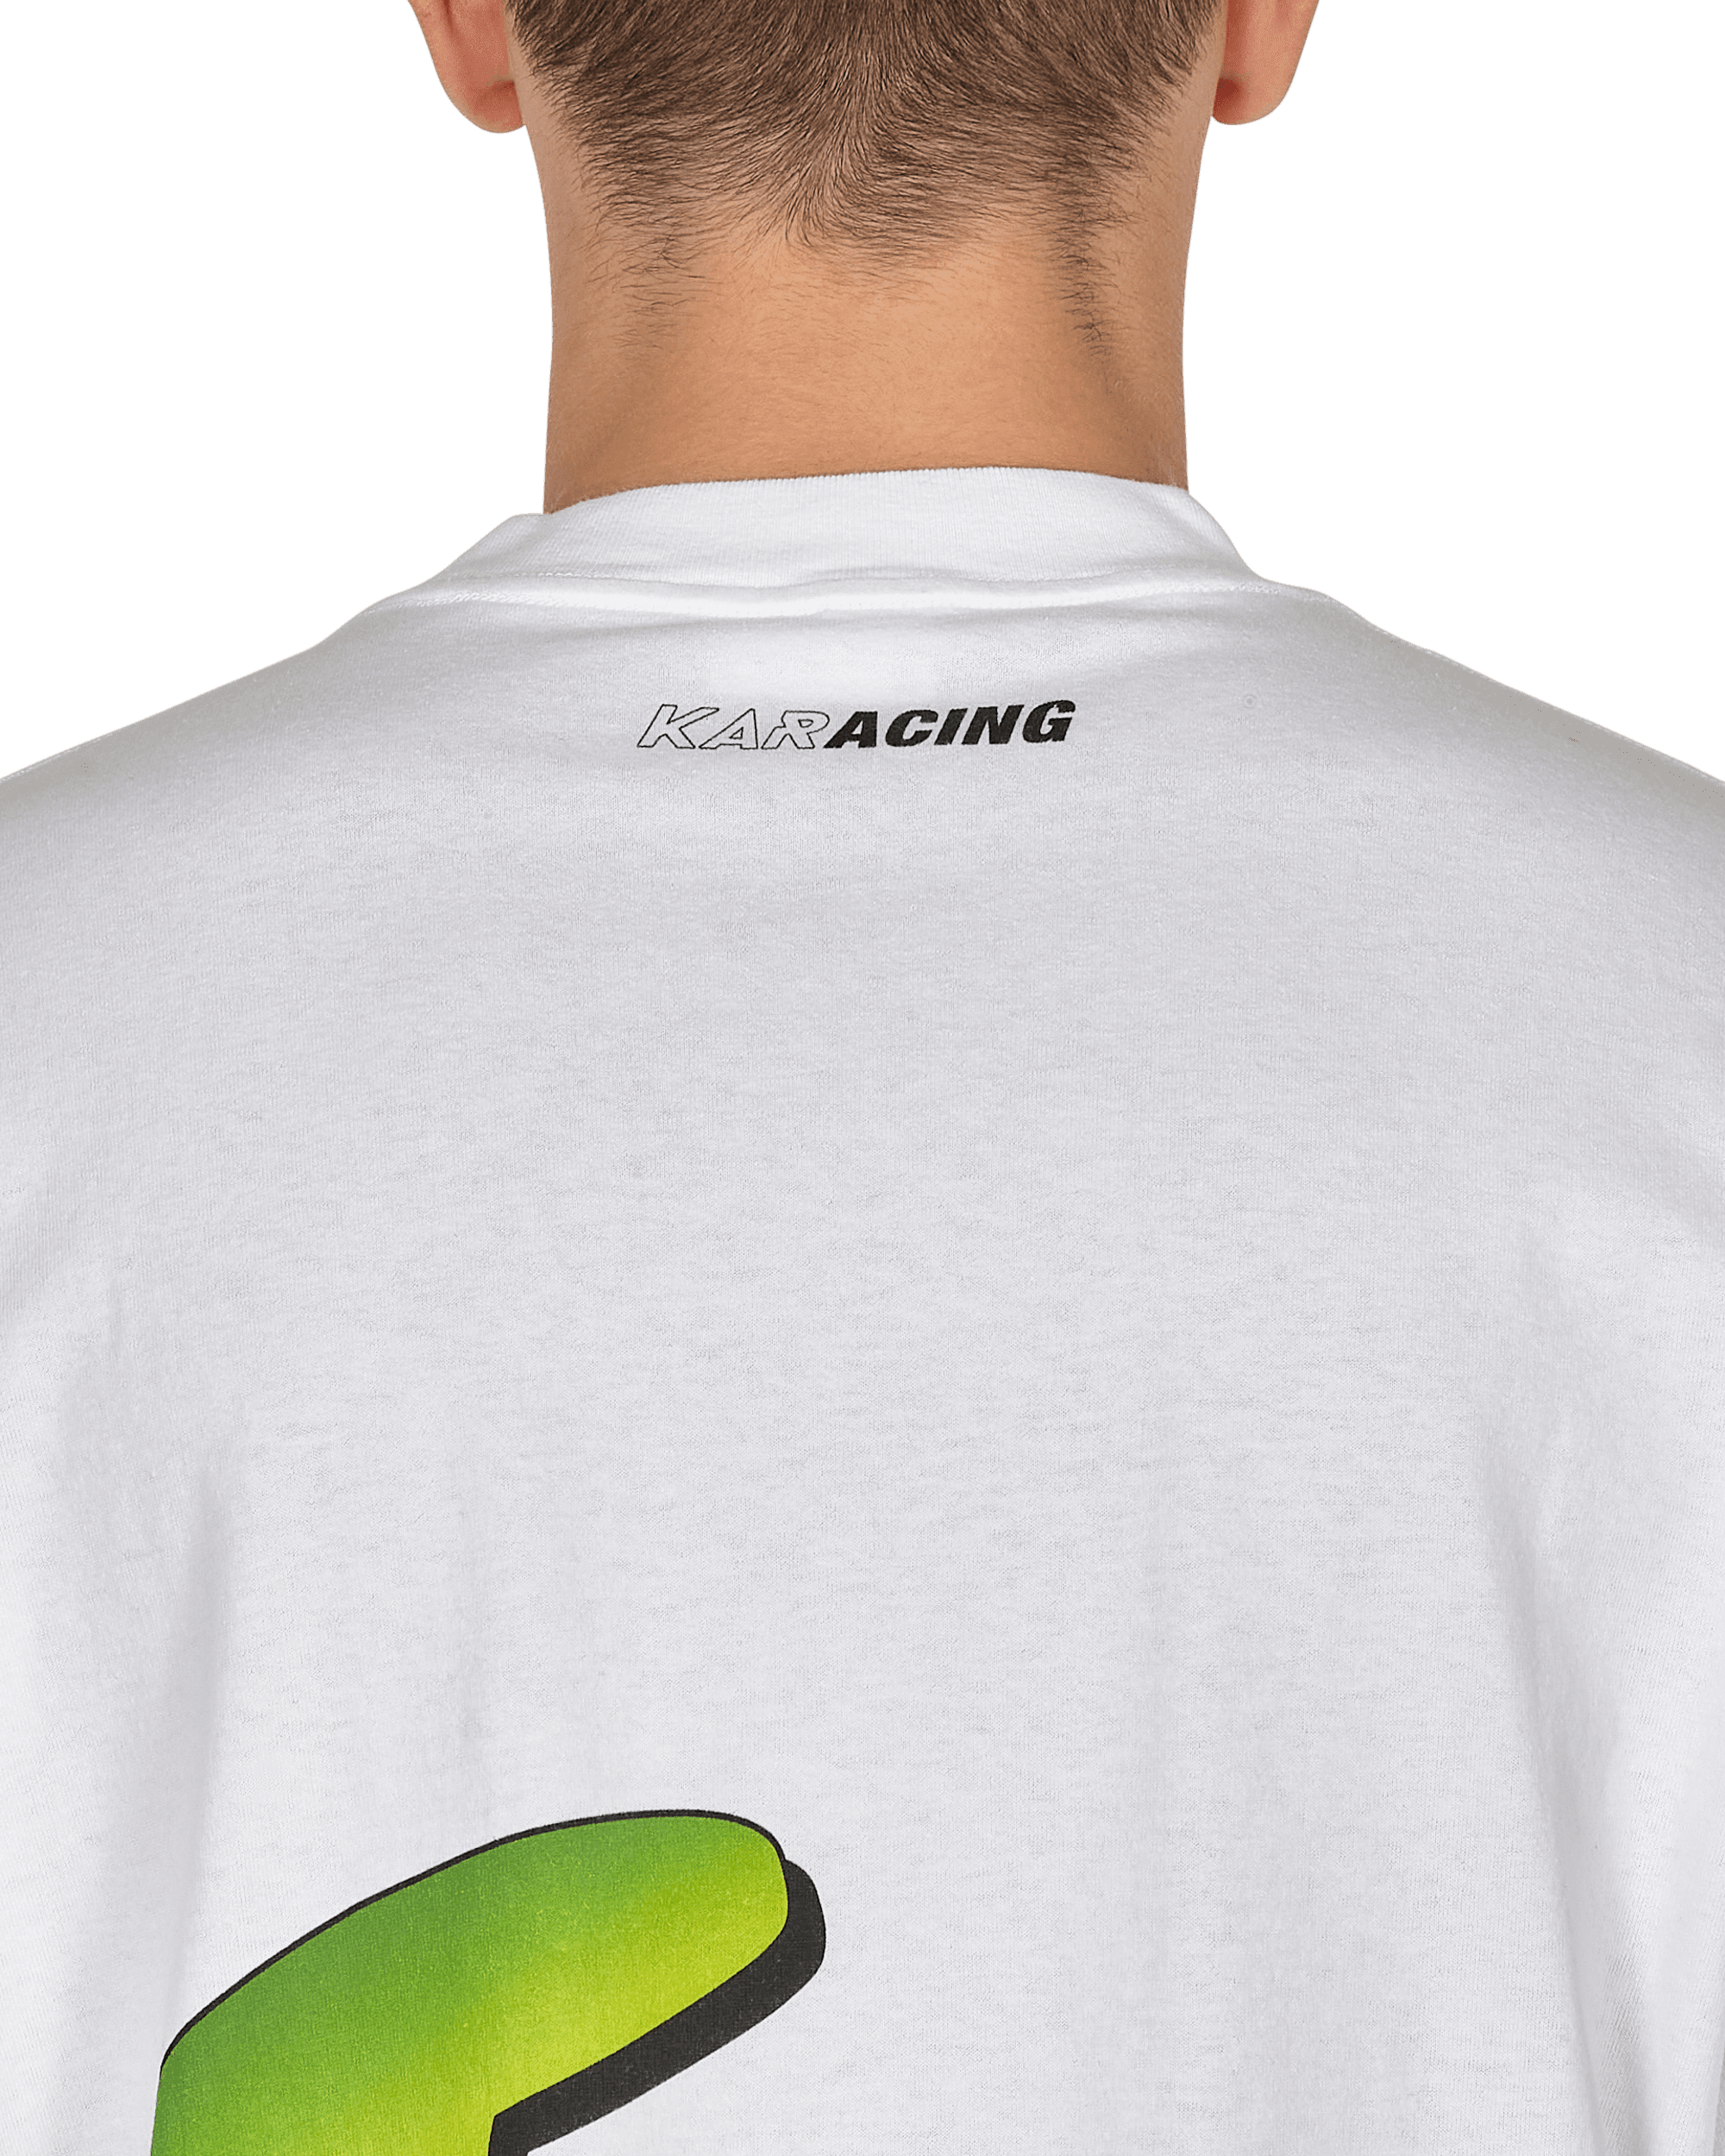 L'Art De L'Automobile Mock Neck Collar T-Shirts White T-Shirts Shortsleeve KARSPLASH-01-B 002